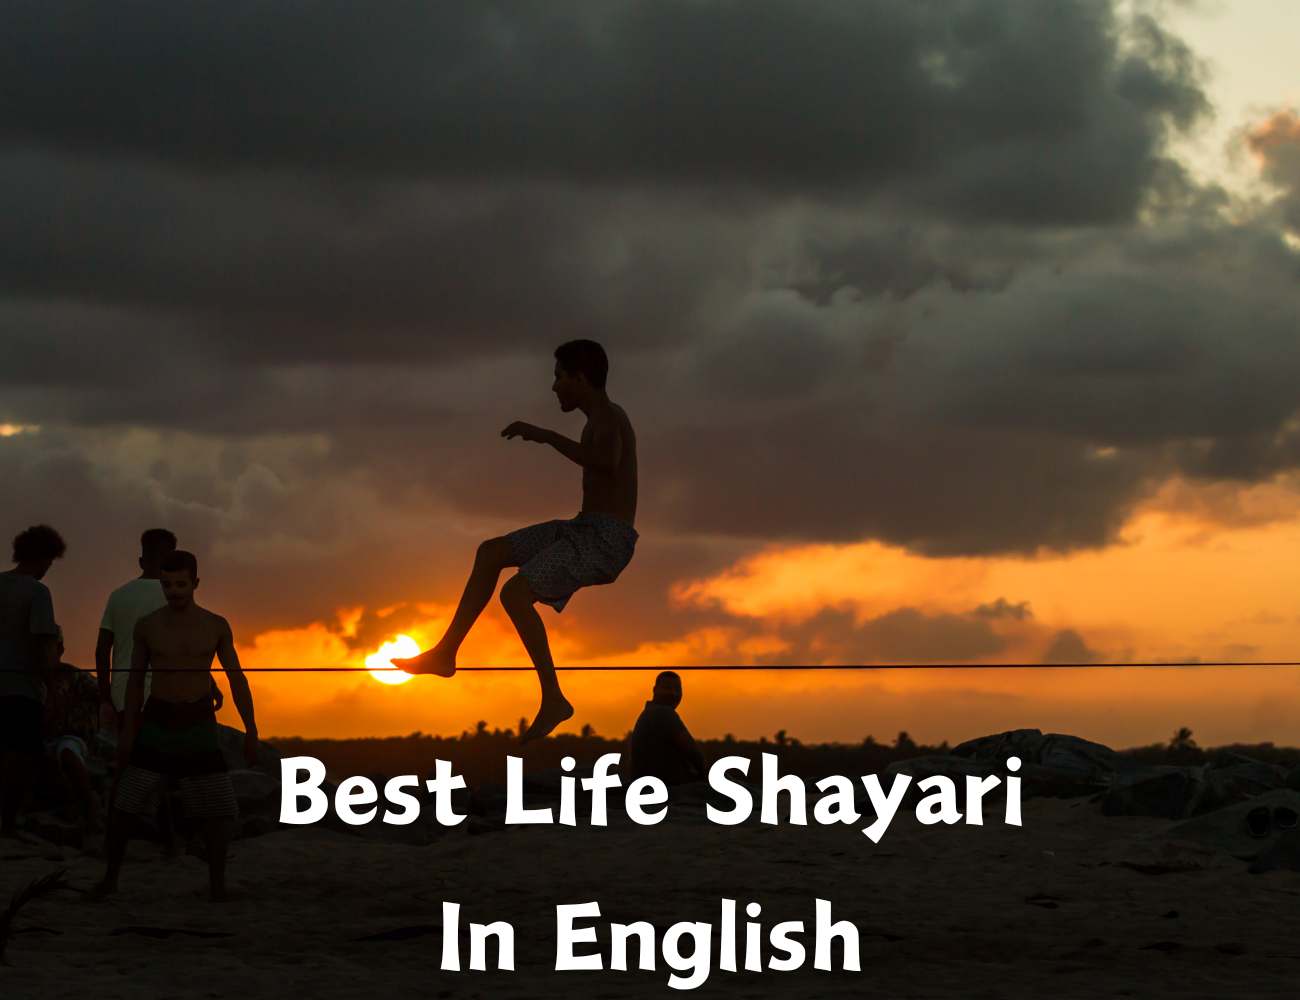 Life shayari In English